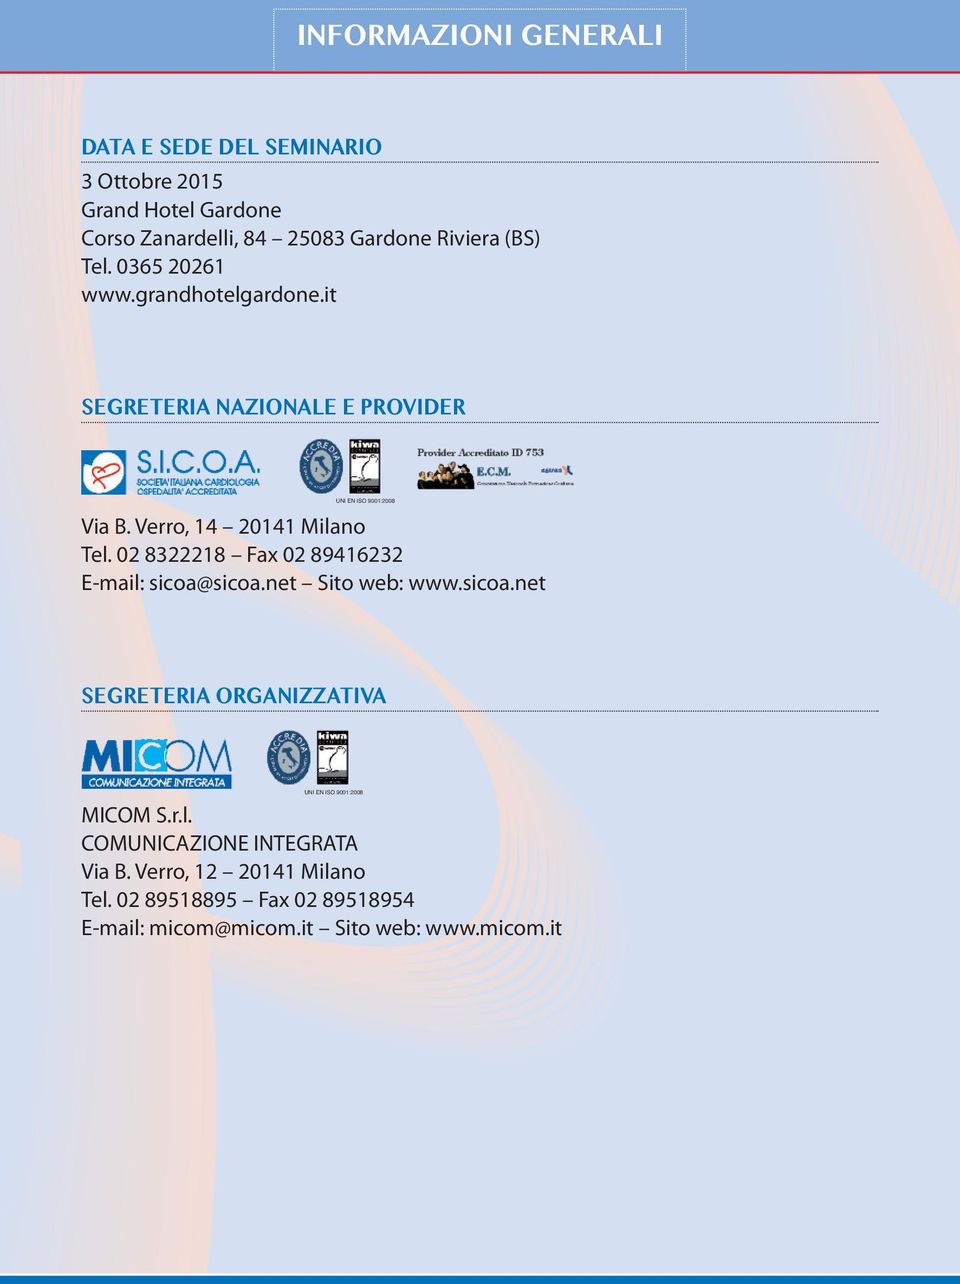 02 8322218 Fax 02 89416232 E-mail: sicoa@sicoa.net Sito web: www.sicoa.net SEGRETERIA ORGANIZZATIVA UNI EN ISO 9001:2008 MICOM S.r.